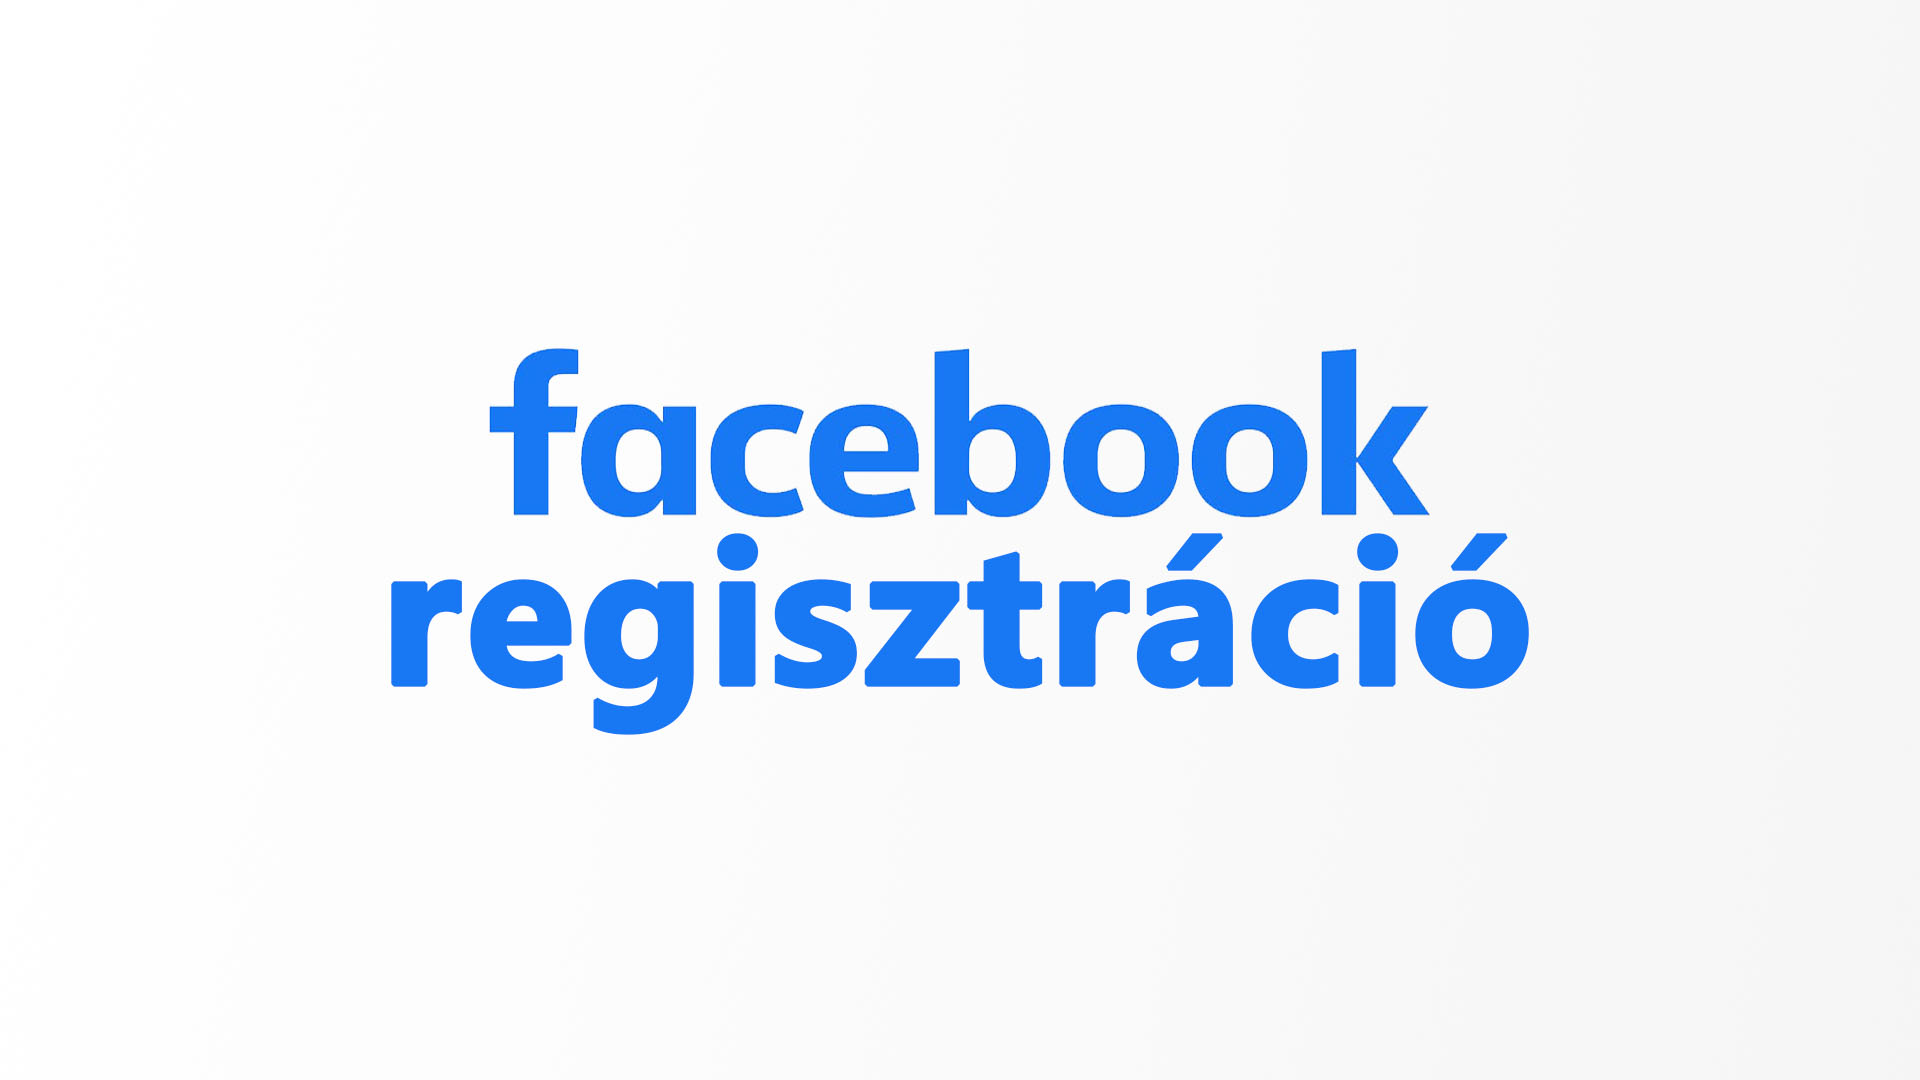 [Facebook regisztráció] - Facebook regisztrálás lépései magyarul – Facebook magyar nyelvű regisztrációs útmutató